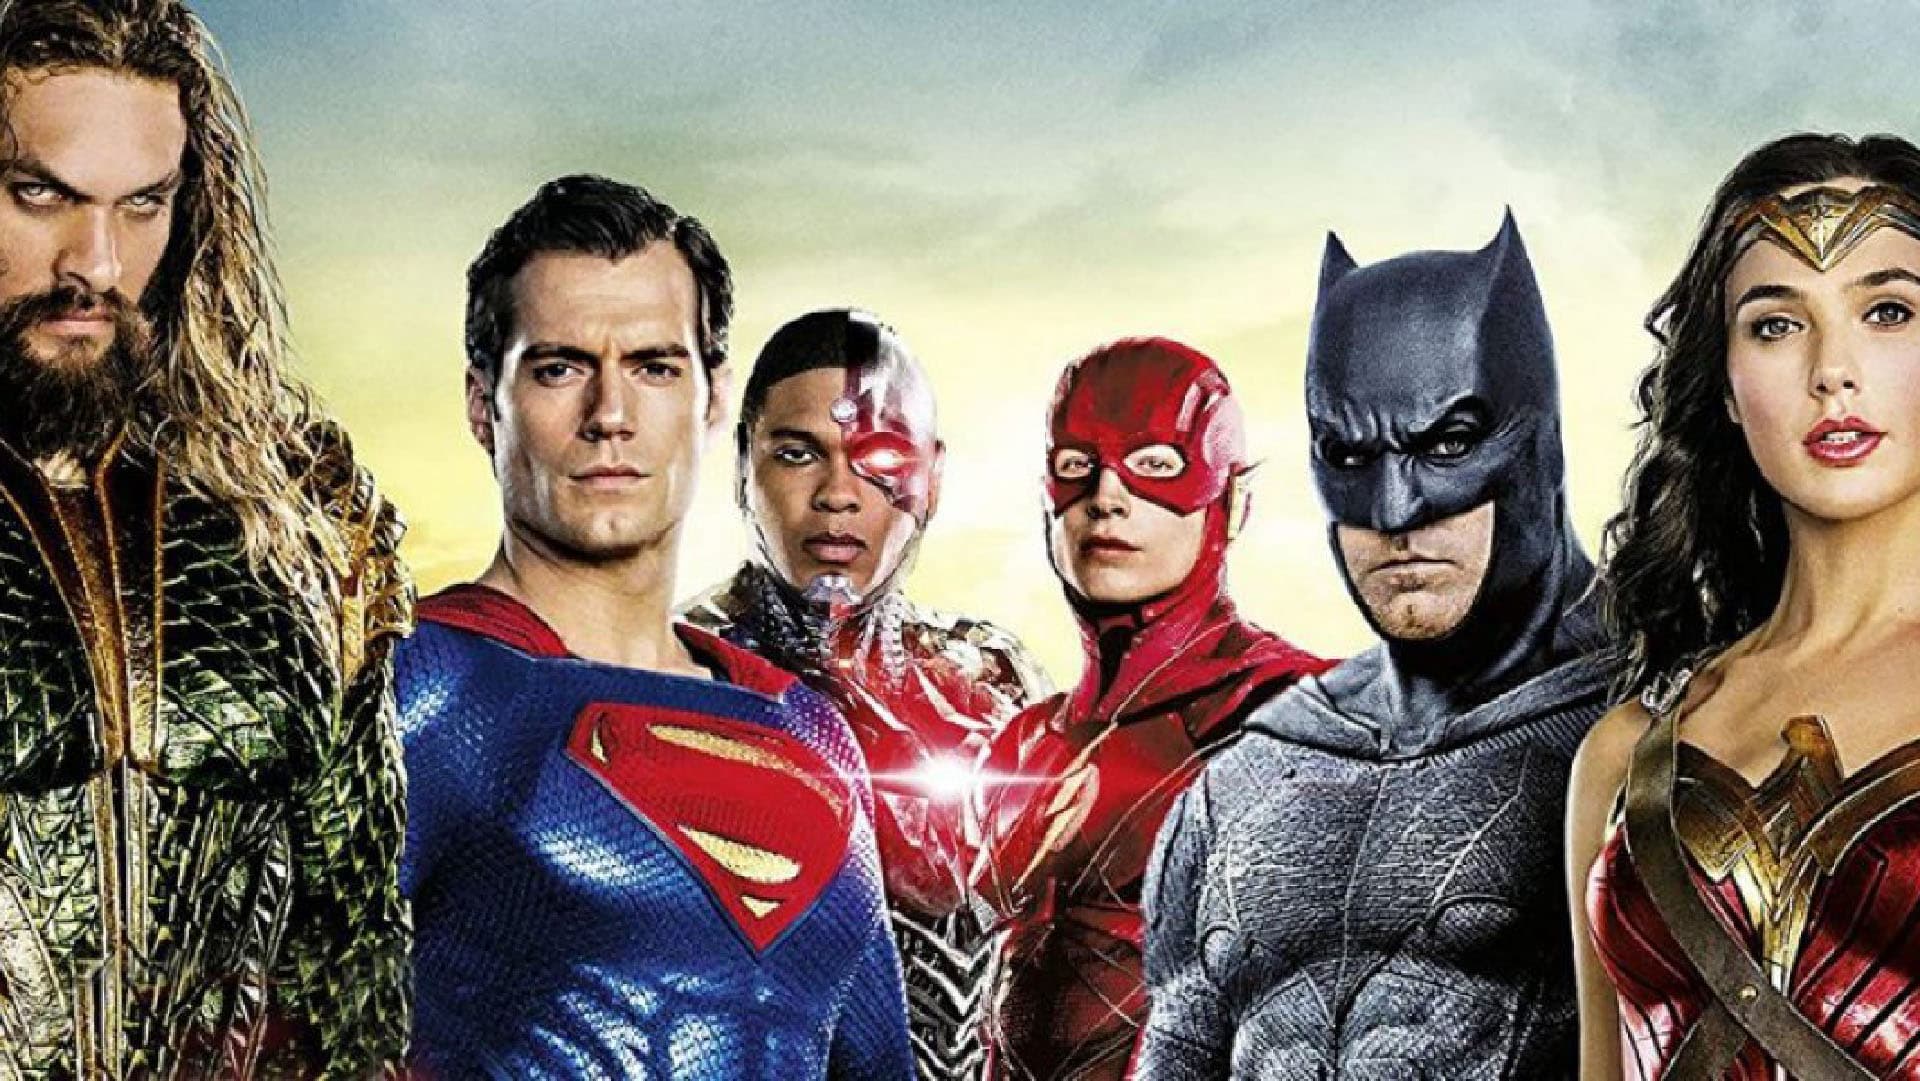 Justice League censurato? Zack Snyder promette parolacce e violenza!